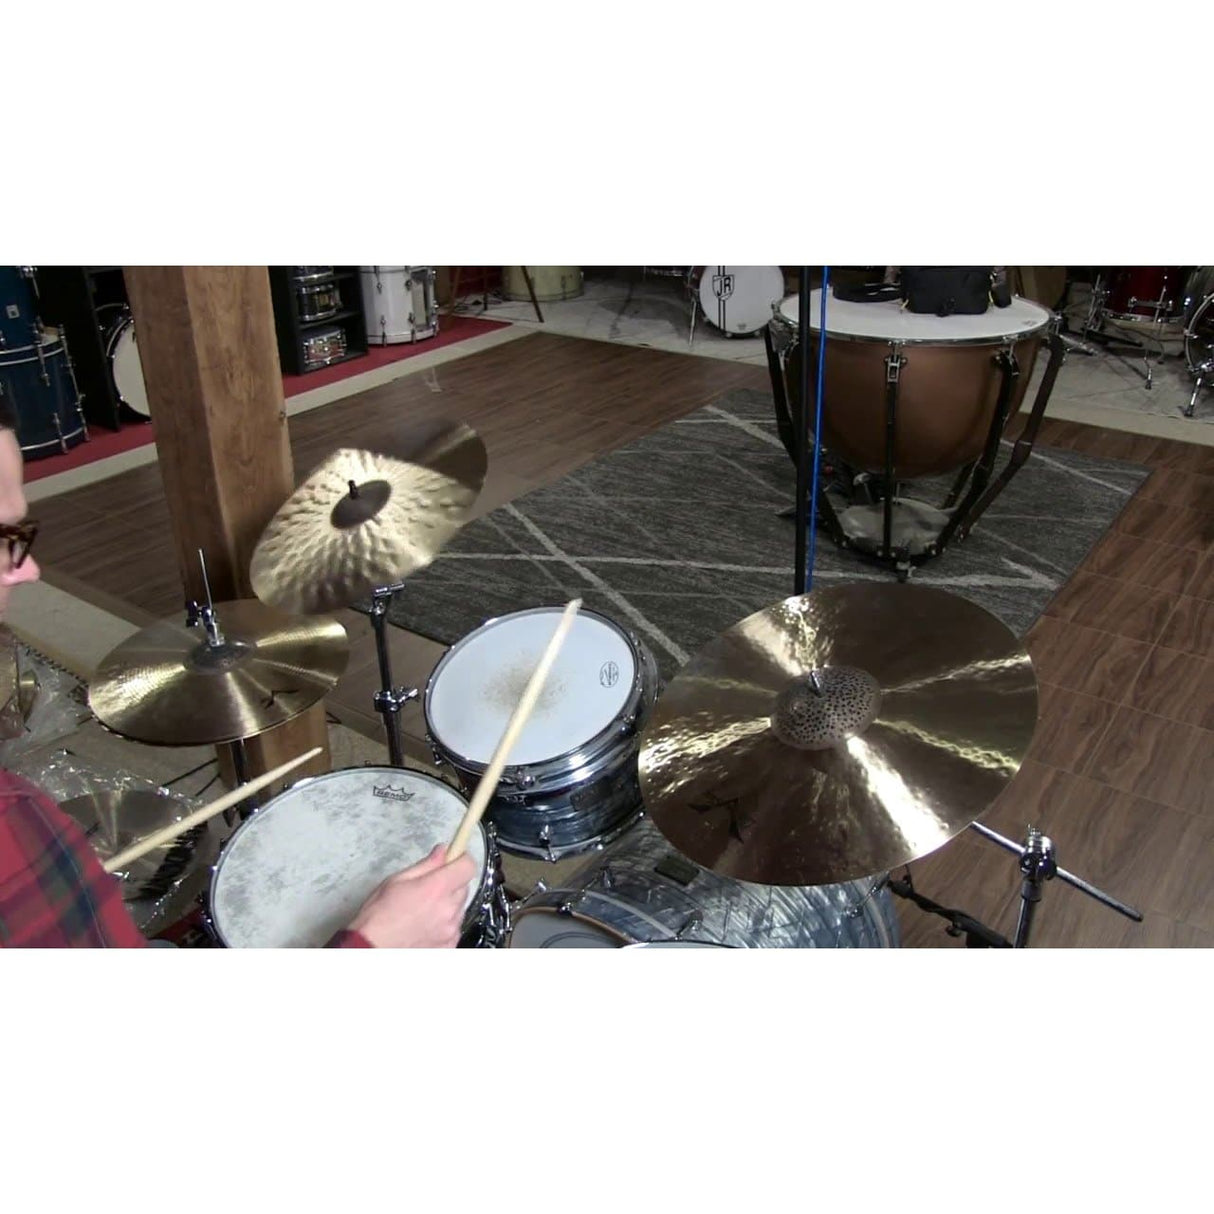 Sabian Prototype HHX Crash Cymbal 16" 1071 grams